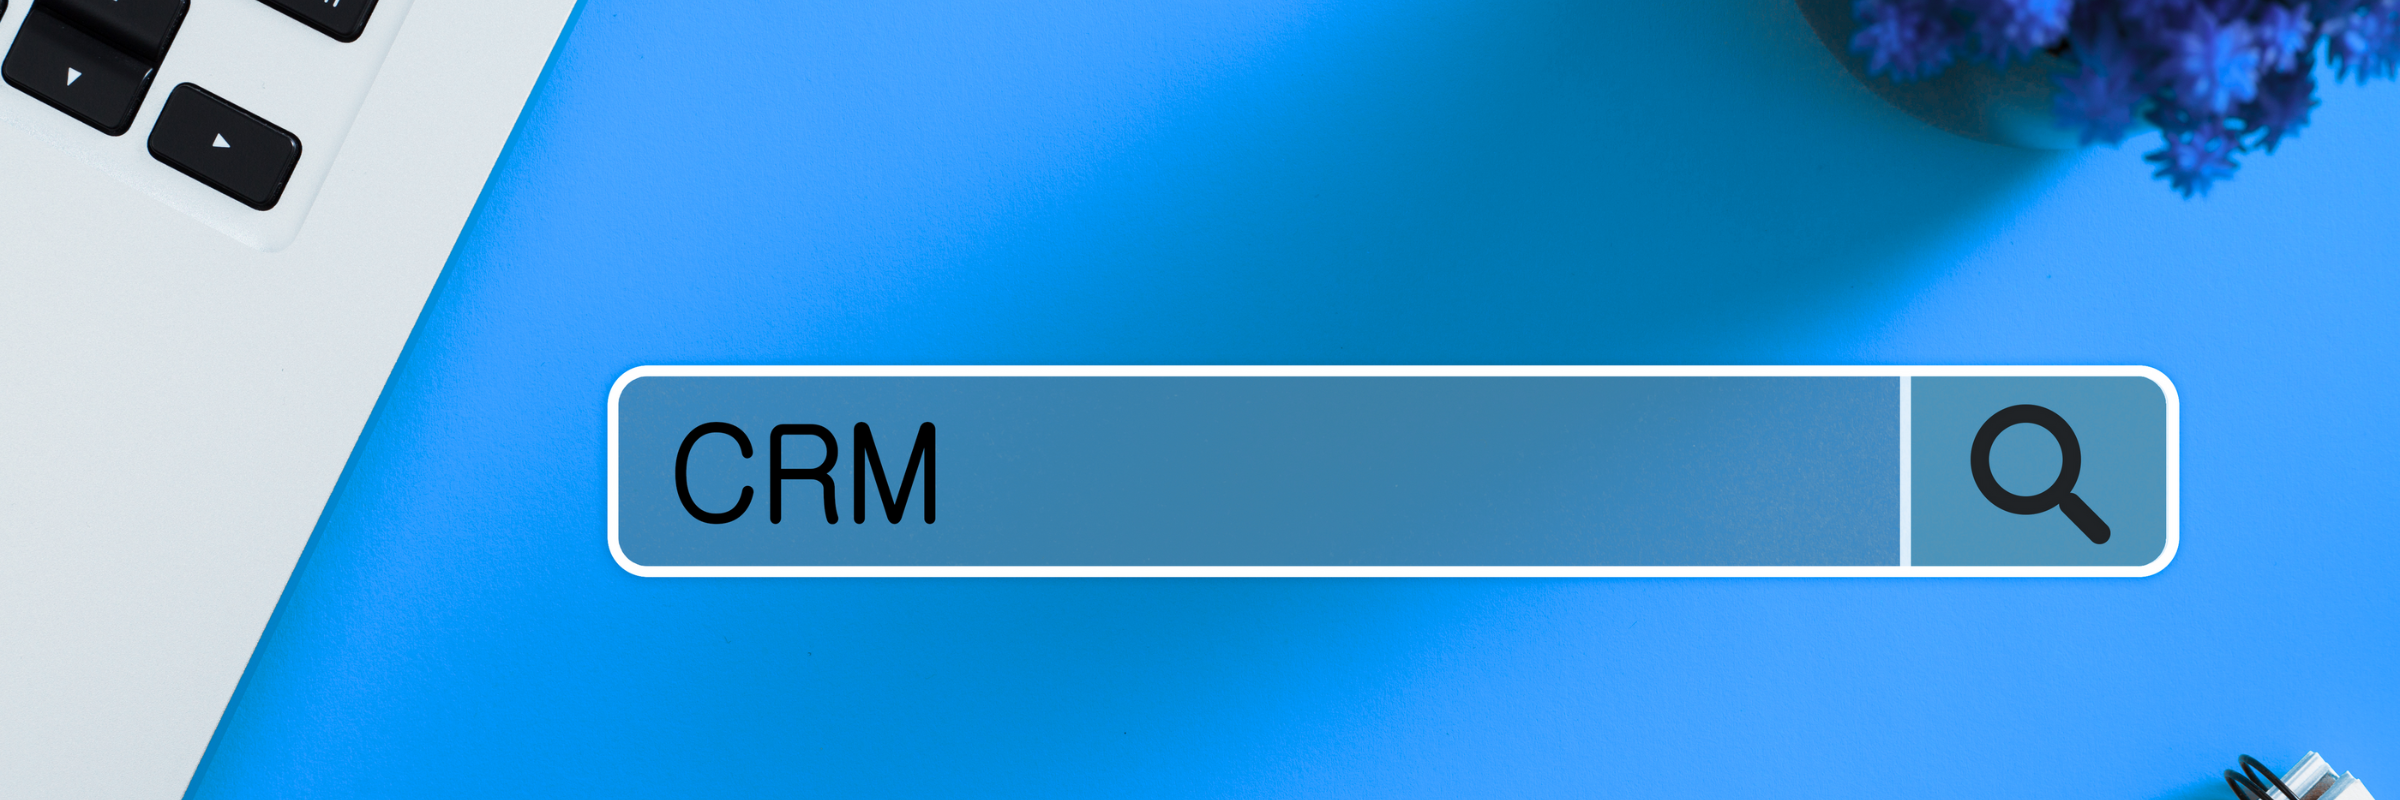 ¿Qué es CRM?